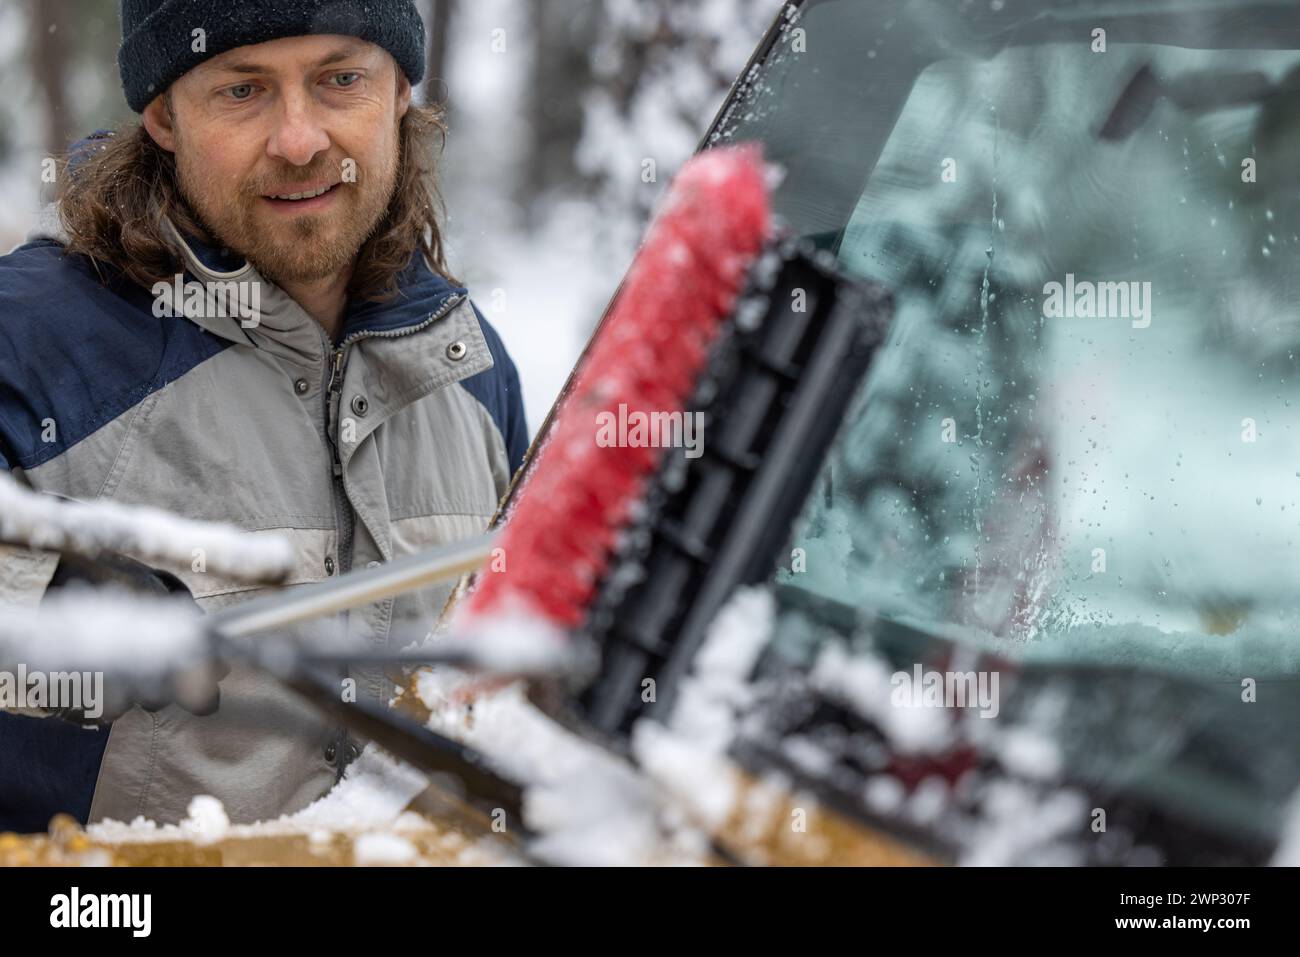 Ein Mann putzt sein Auto mit einer Schneebürste. Der Mann lächelt und genießt die Aufgabe Stockfoto